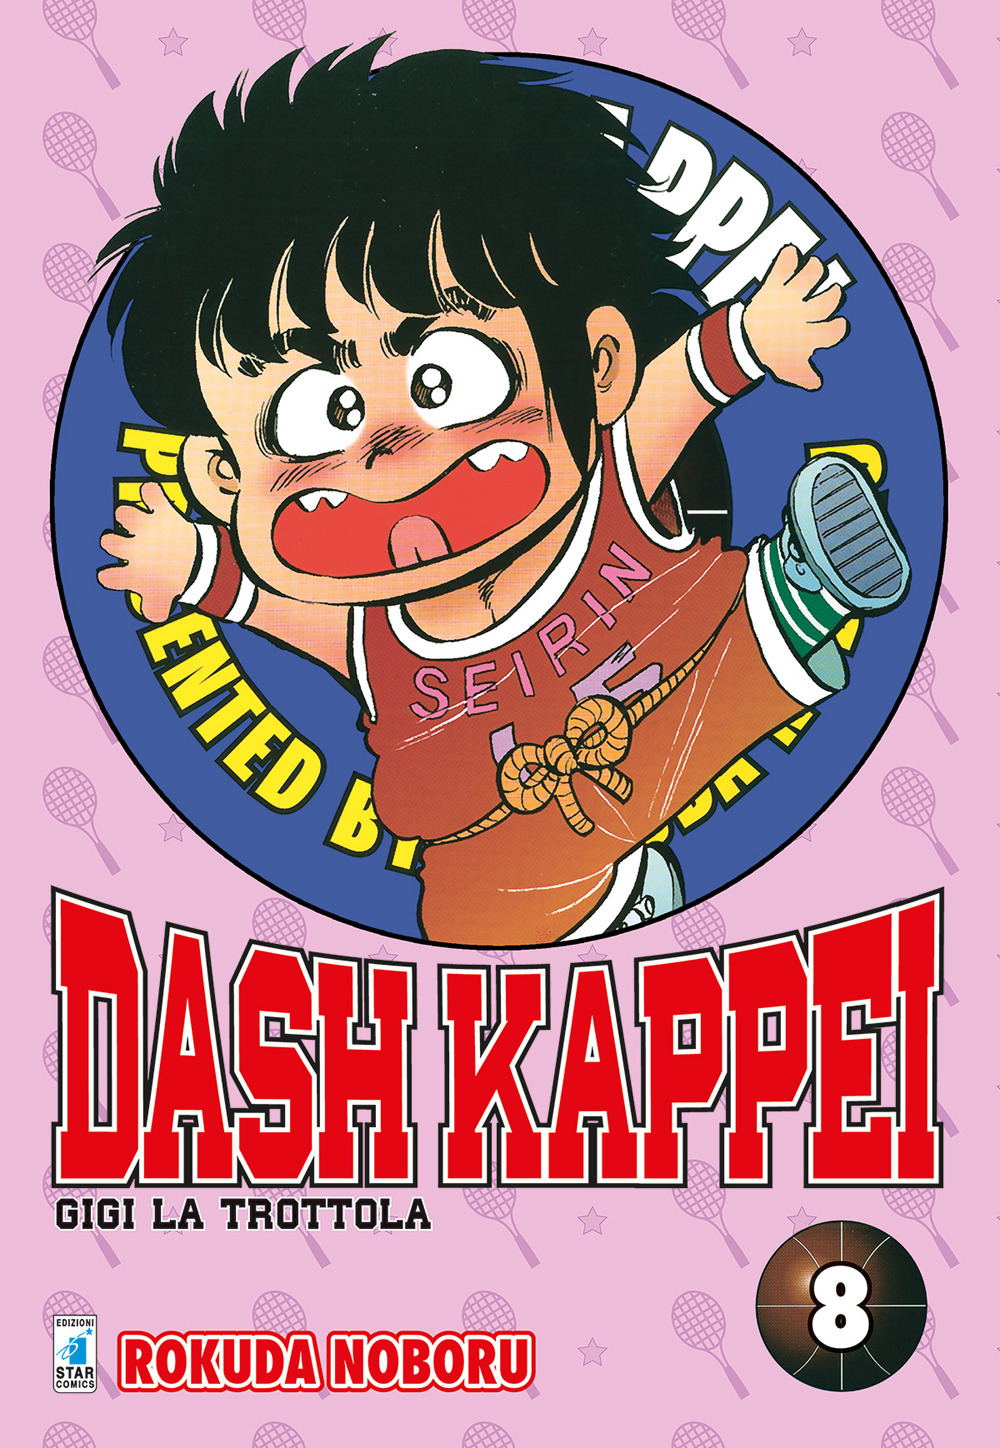 Dash Kappei. Gigi la trottola. Vol. 8